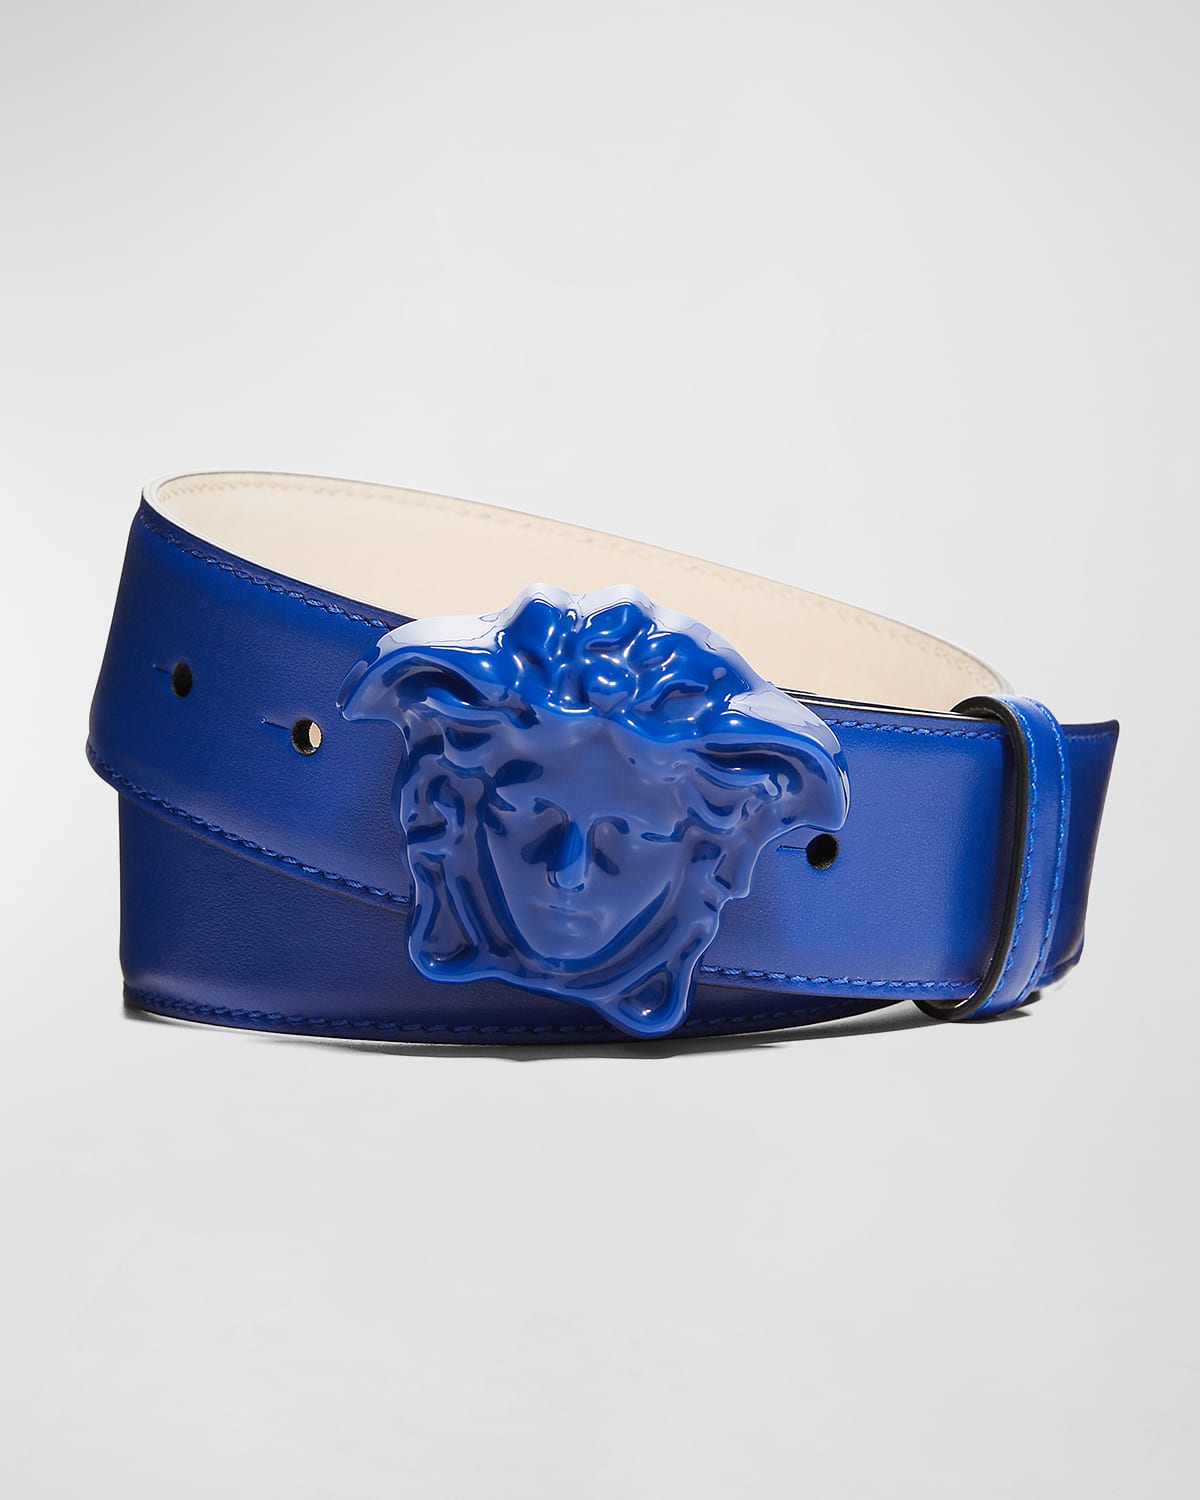 Versace Men's Reversible Medusa Head Leather Belt | Neiman Marcus